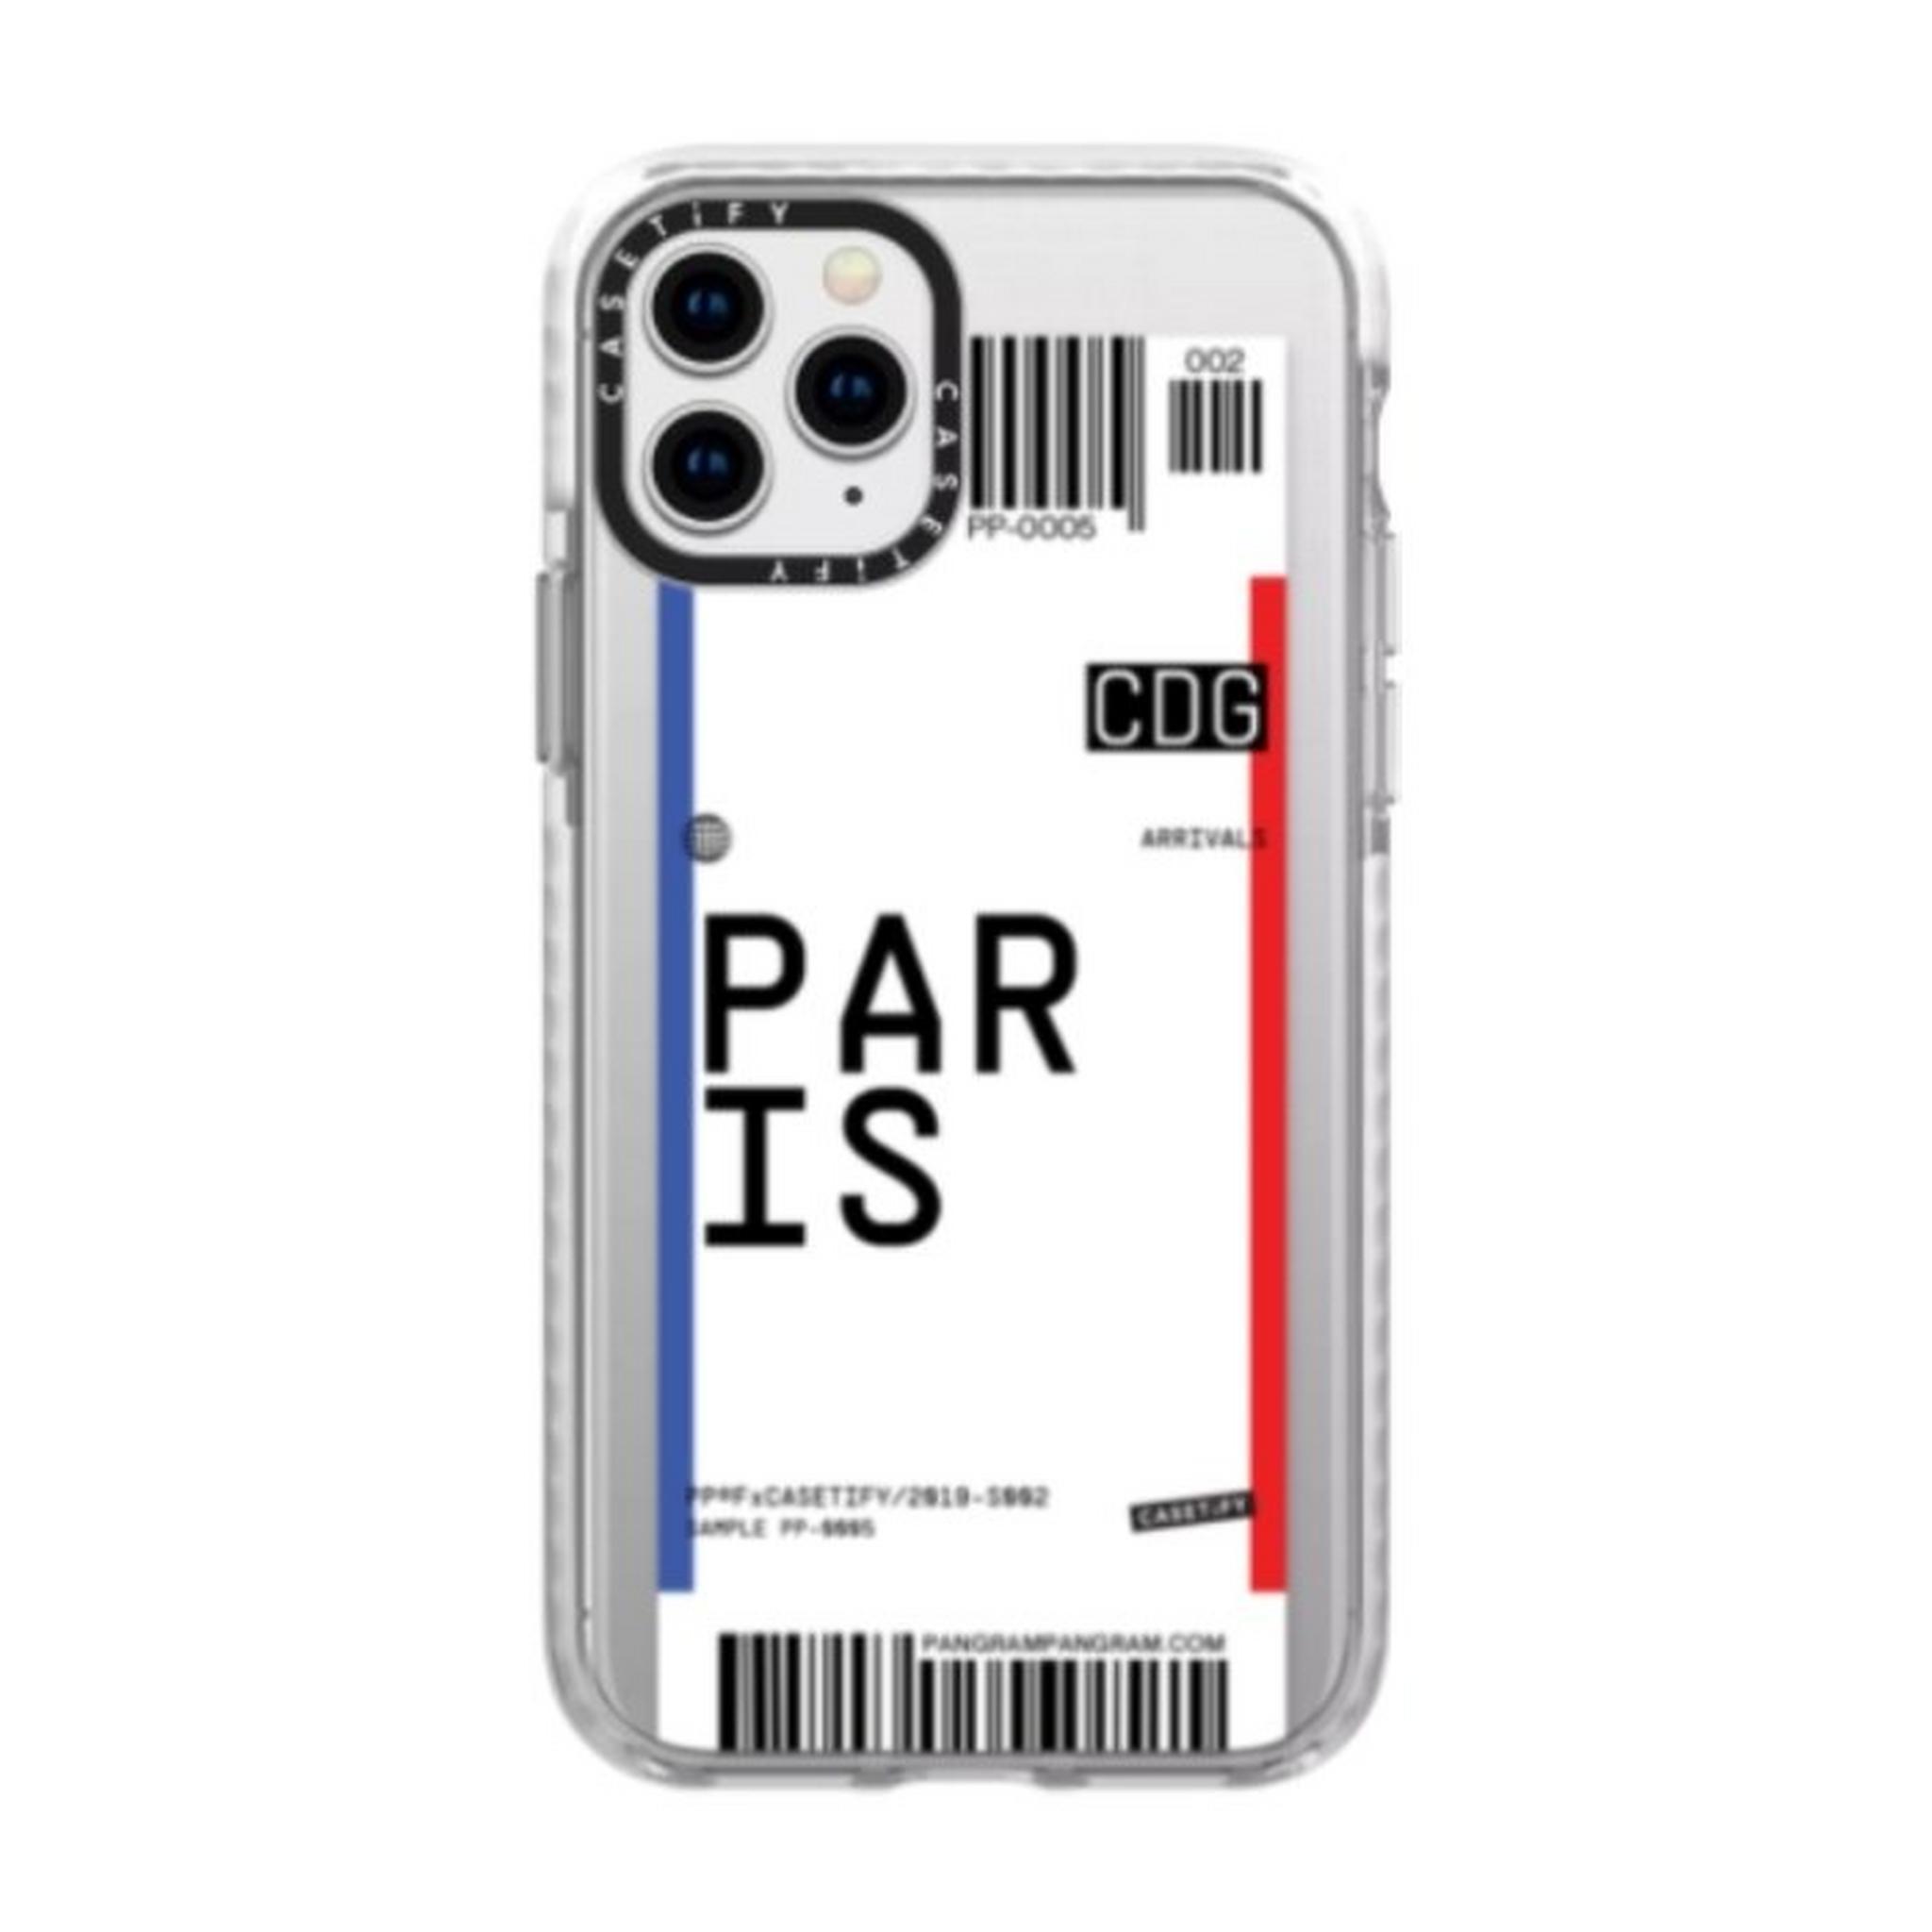 غطاء الحماية كيستيفاي بانغرام باريس لآيفون 11 برو - فروست